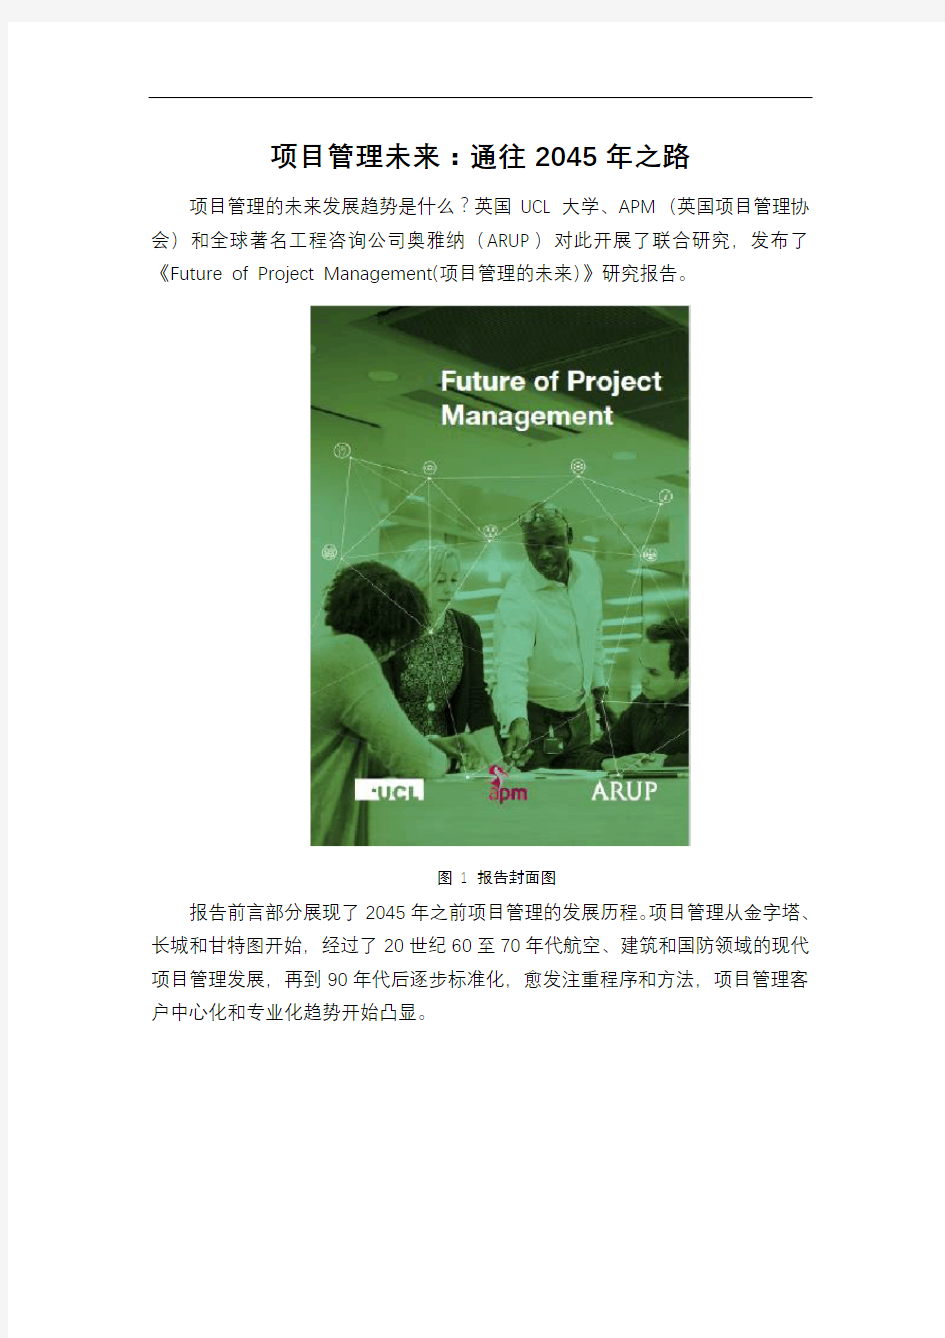 项目管理未来：通往2045年之路 -《Future of Project Management(项目管理的未来)》研究报告解读